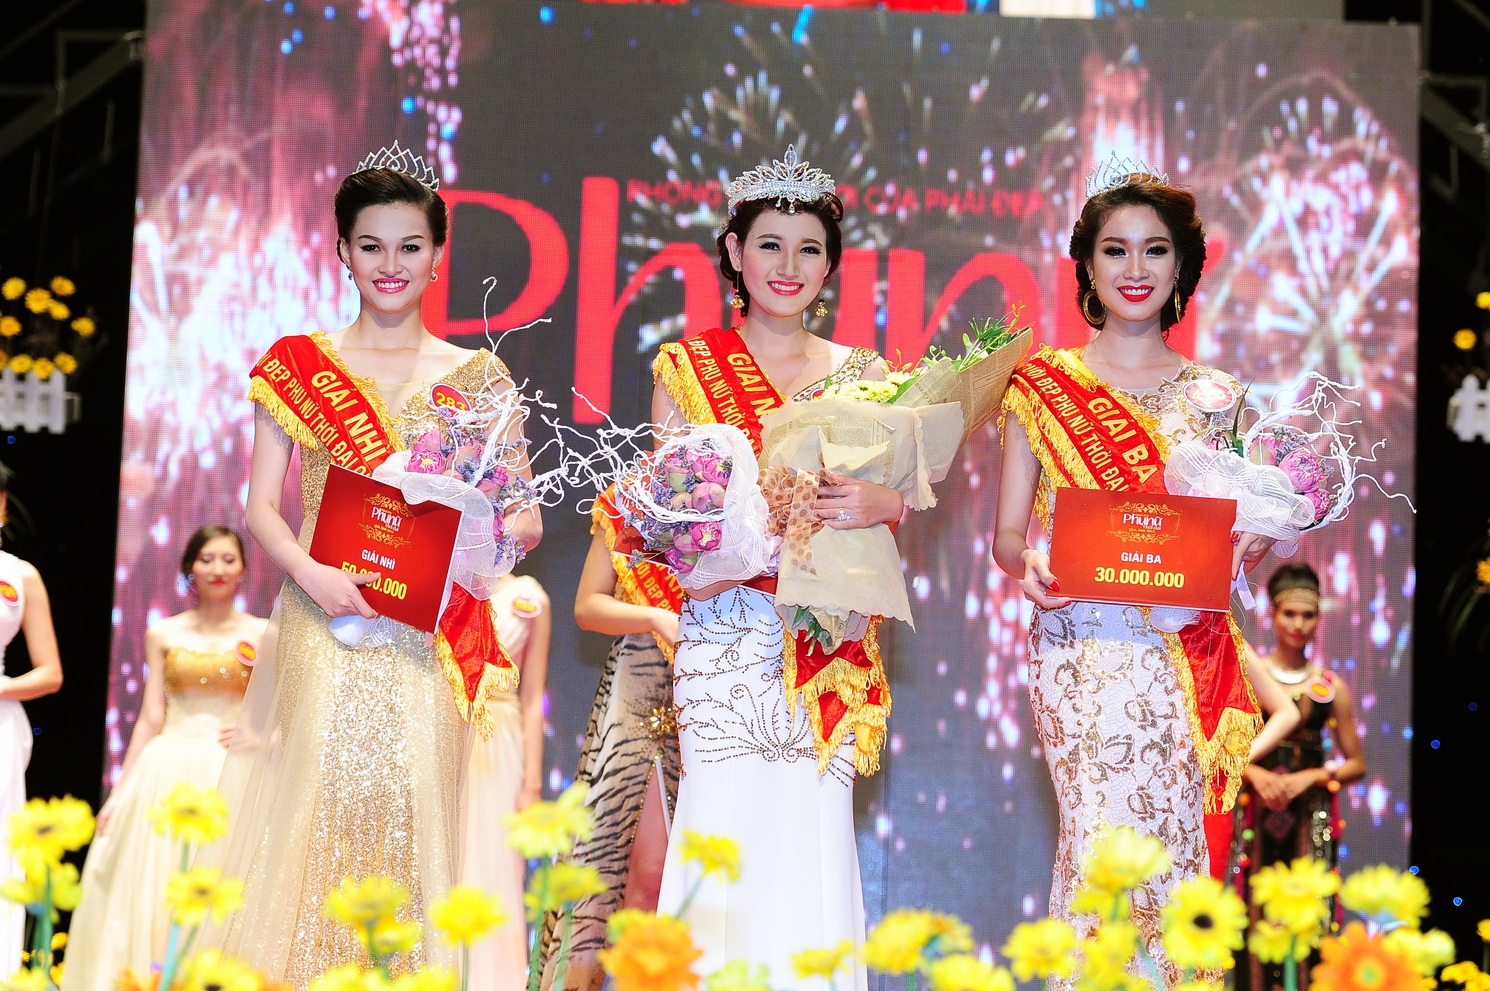 Tổ chức cuộc thi người đẹp trong năm 2015